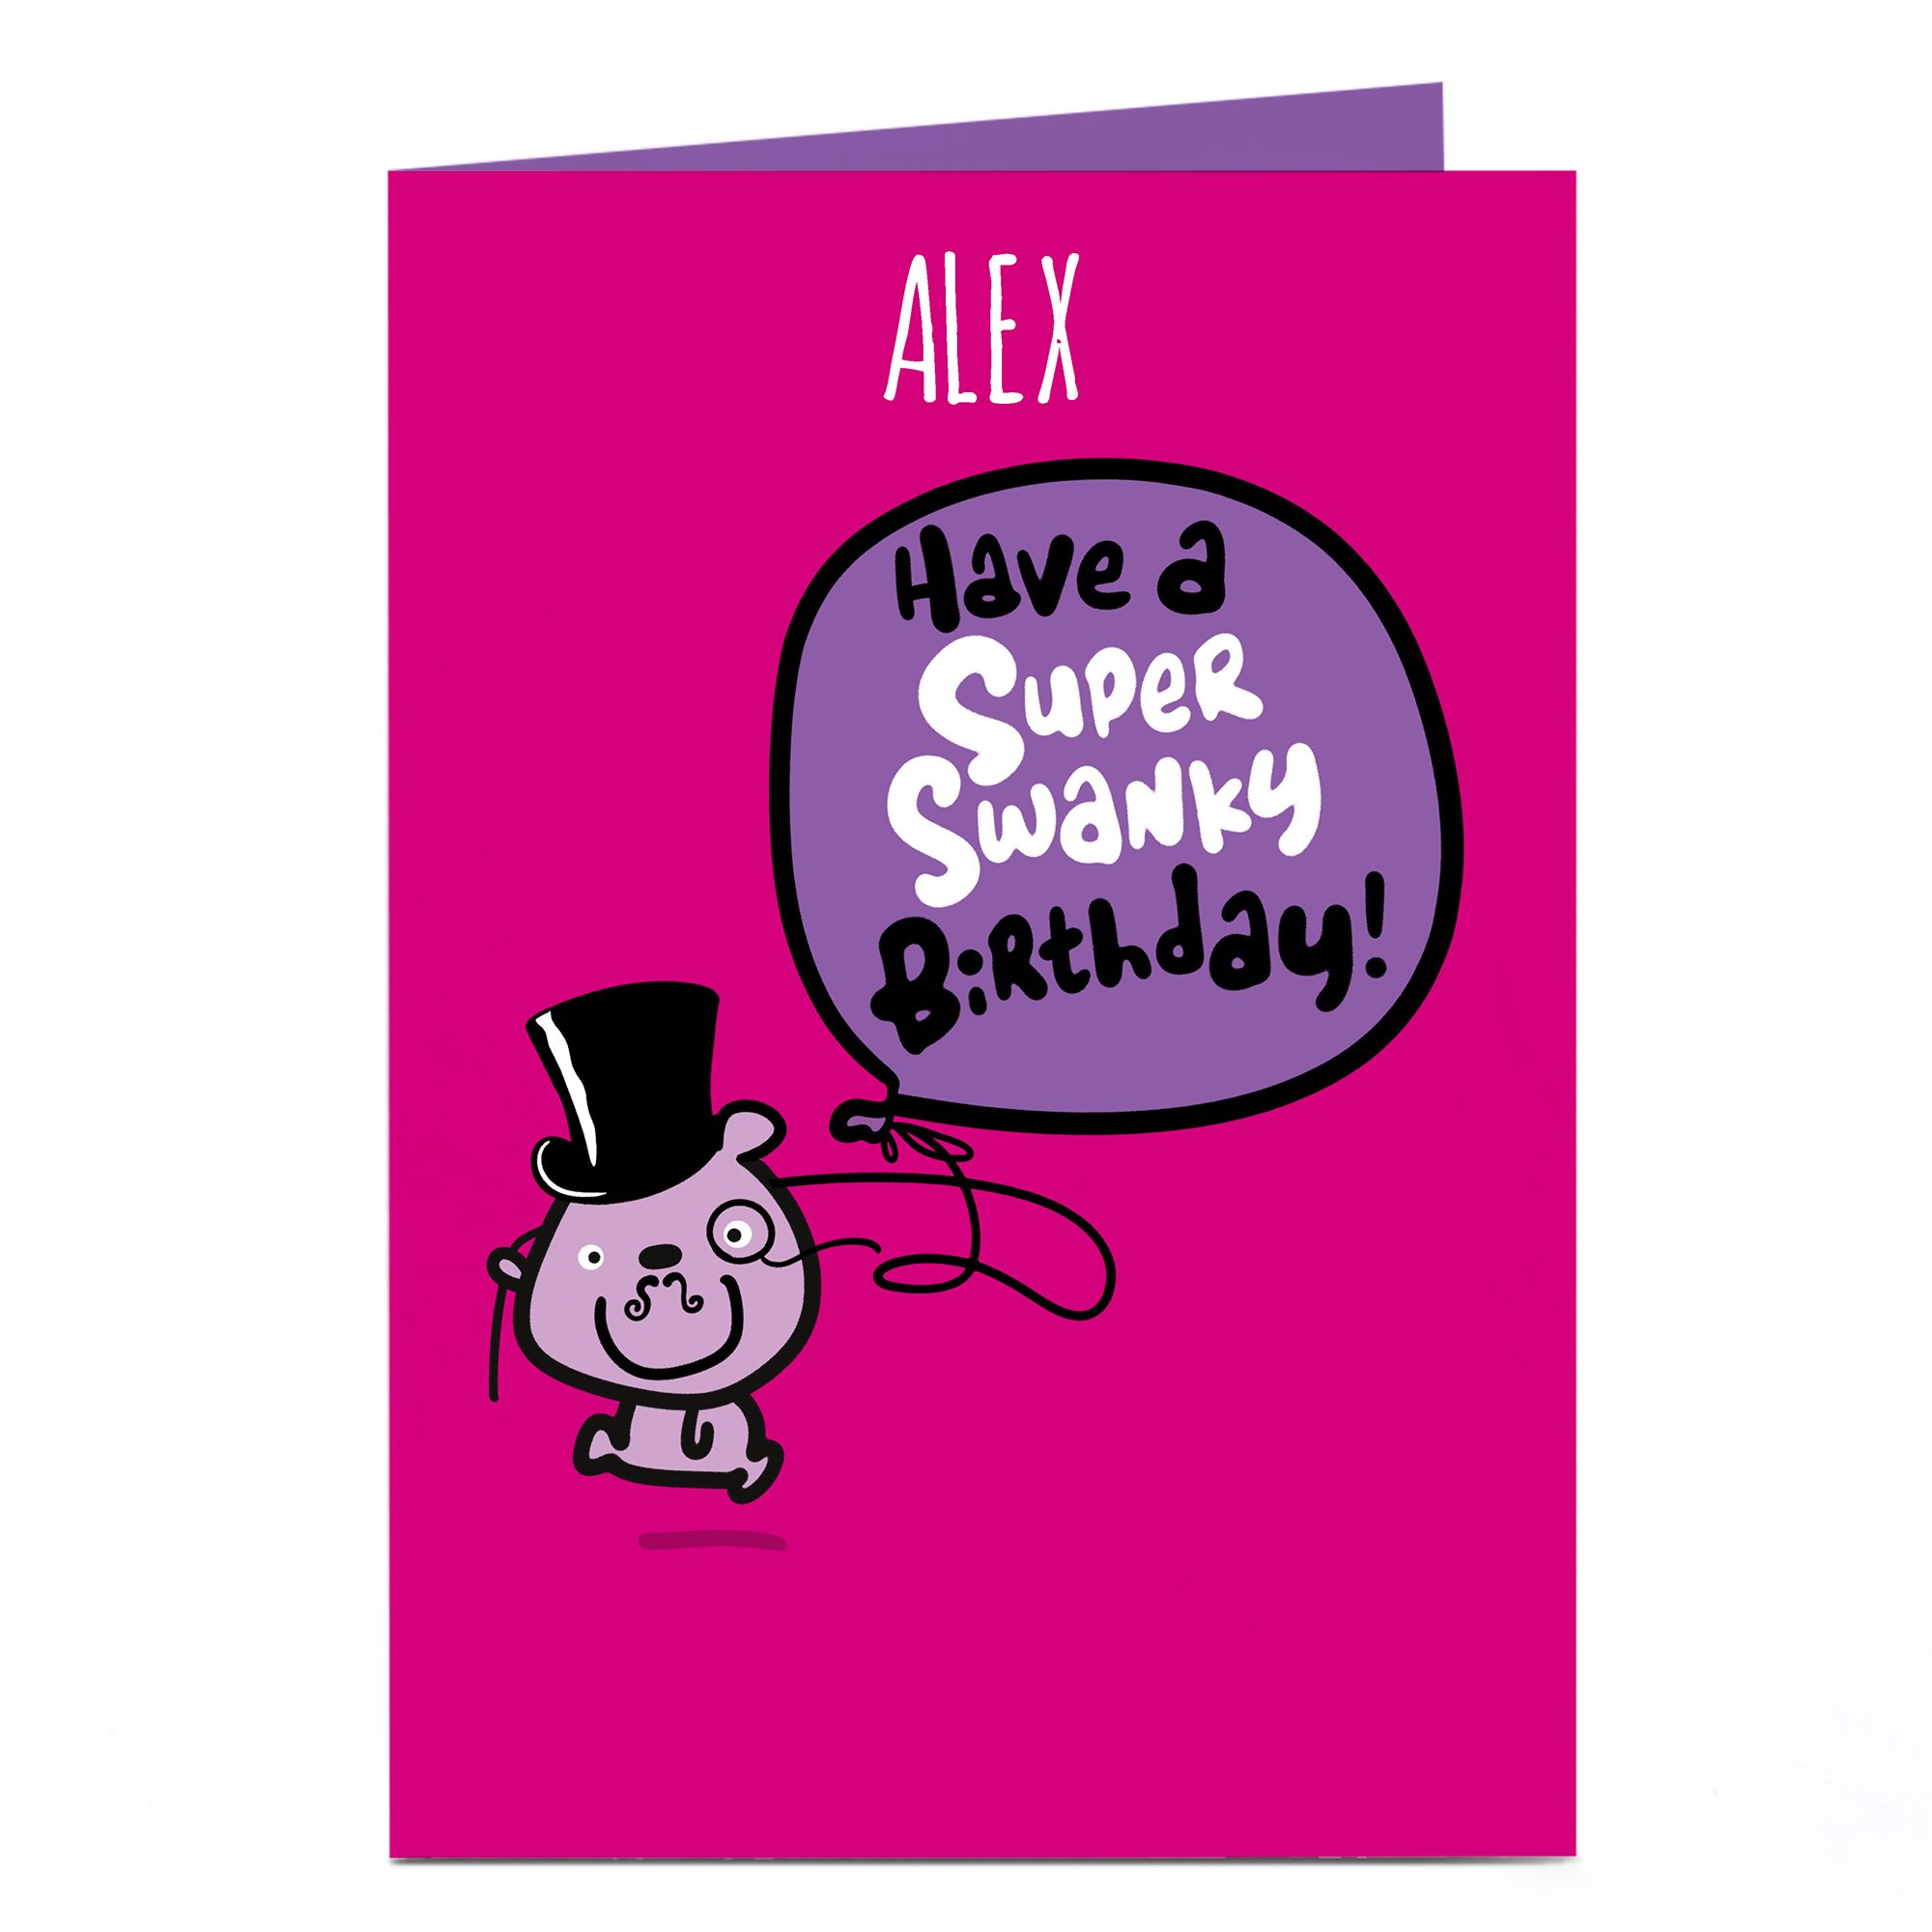 Personalised Fruitloops Birthday Card - Super Swanky